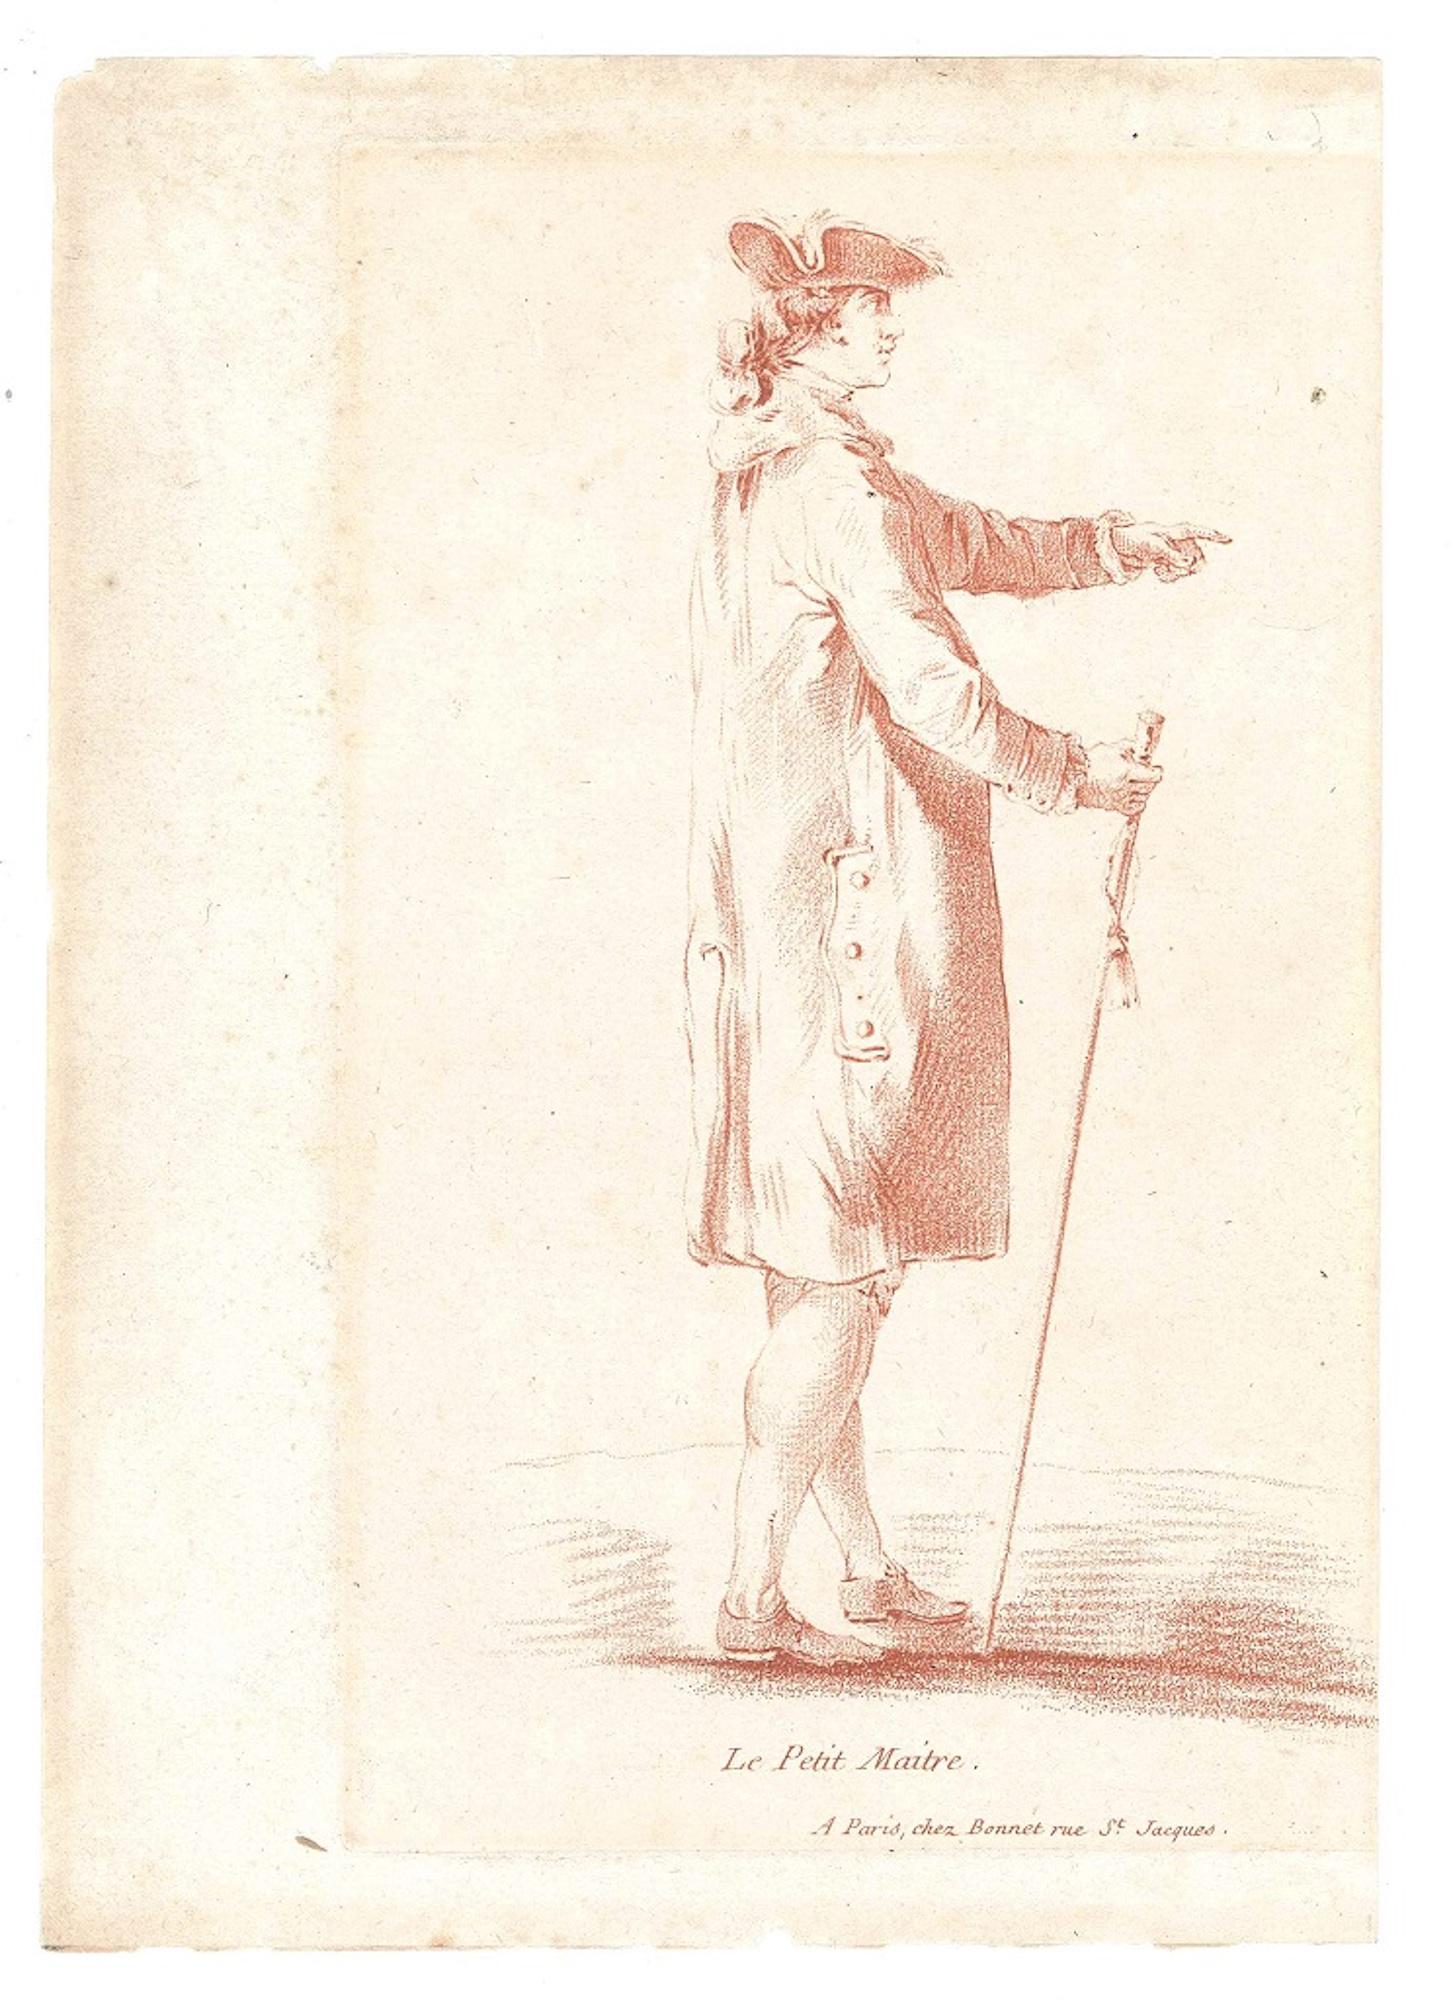 Portrait Print Louis-Marin Bonnet - Le Petit Maitre - eau-forte et pastel d'origine de L-M Bonnet - fin du 18me sicle